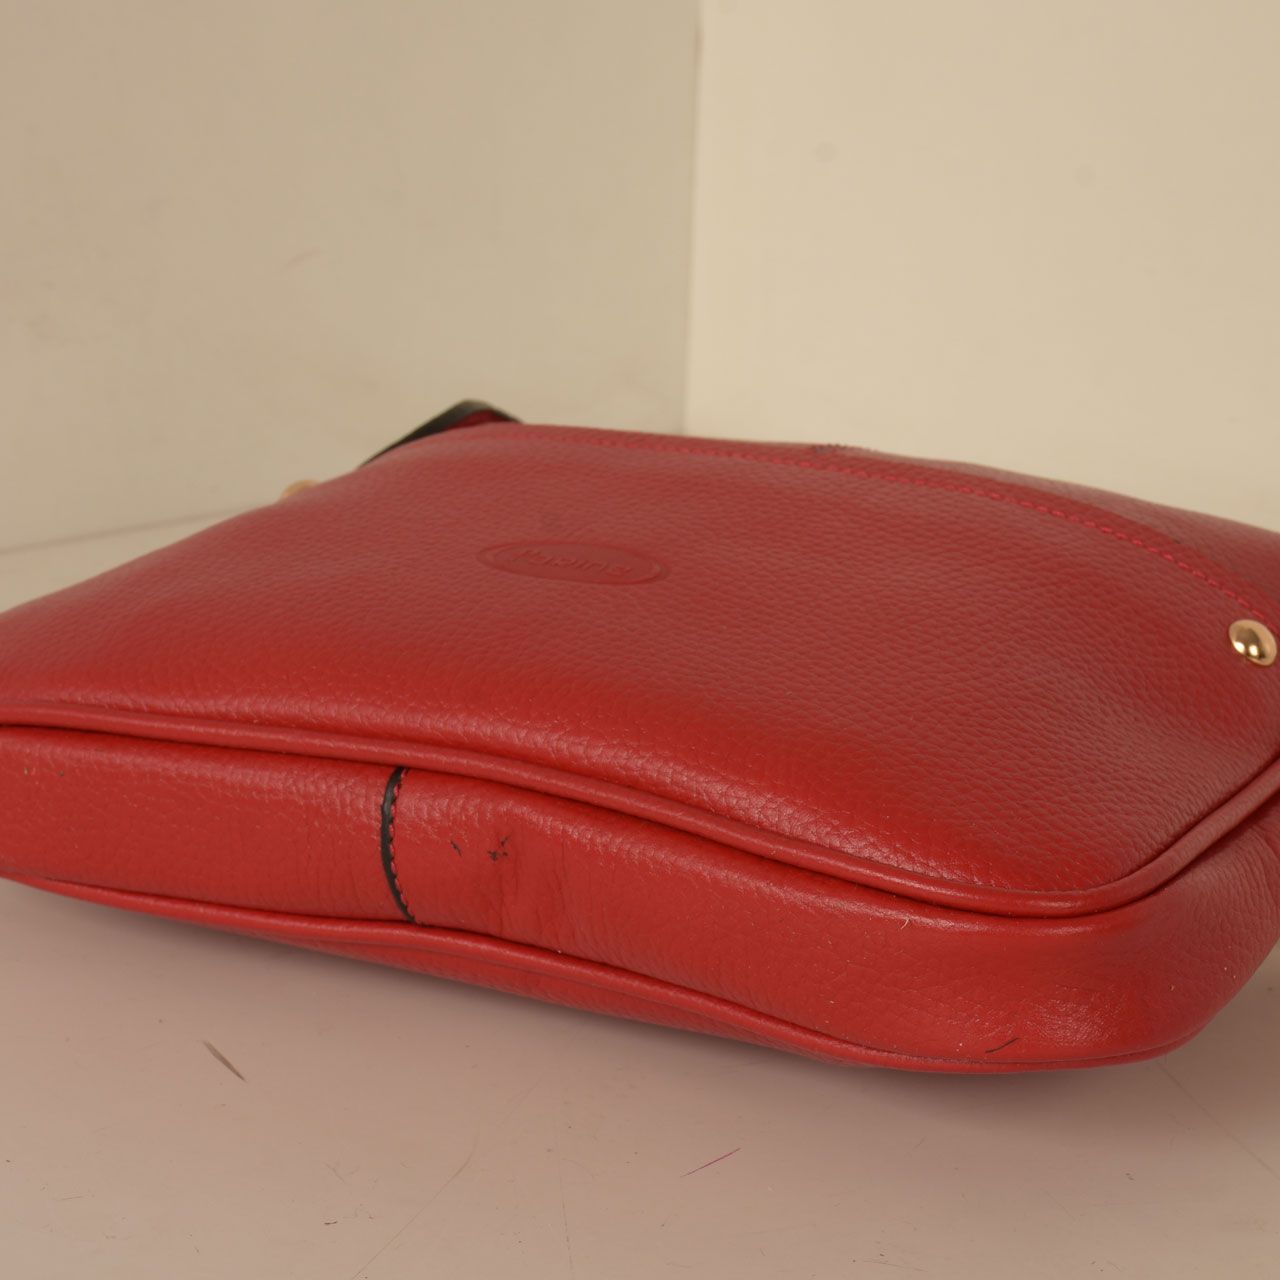 کیف دوشی زنانه پارینه چرم کد V191 -  - 45